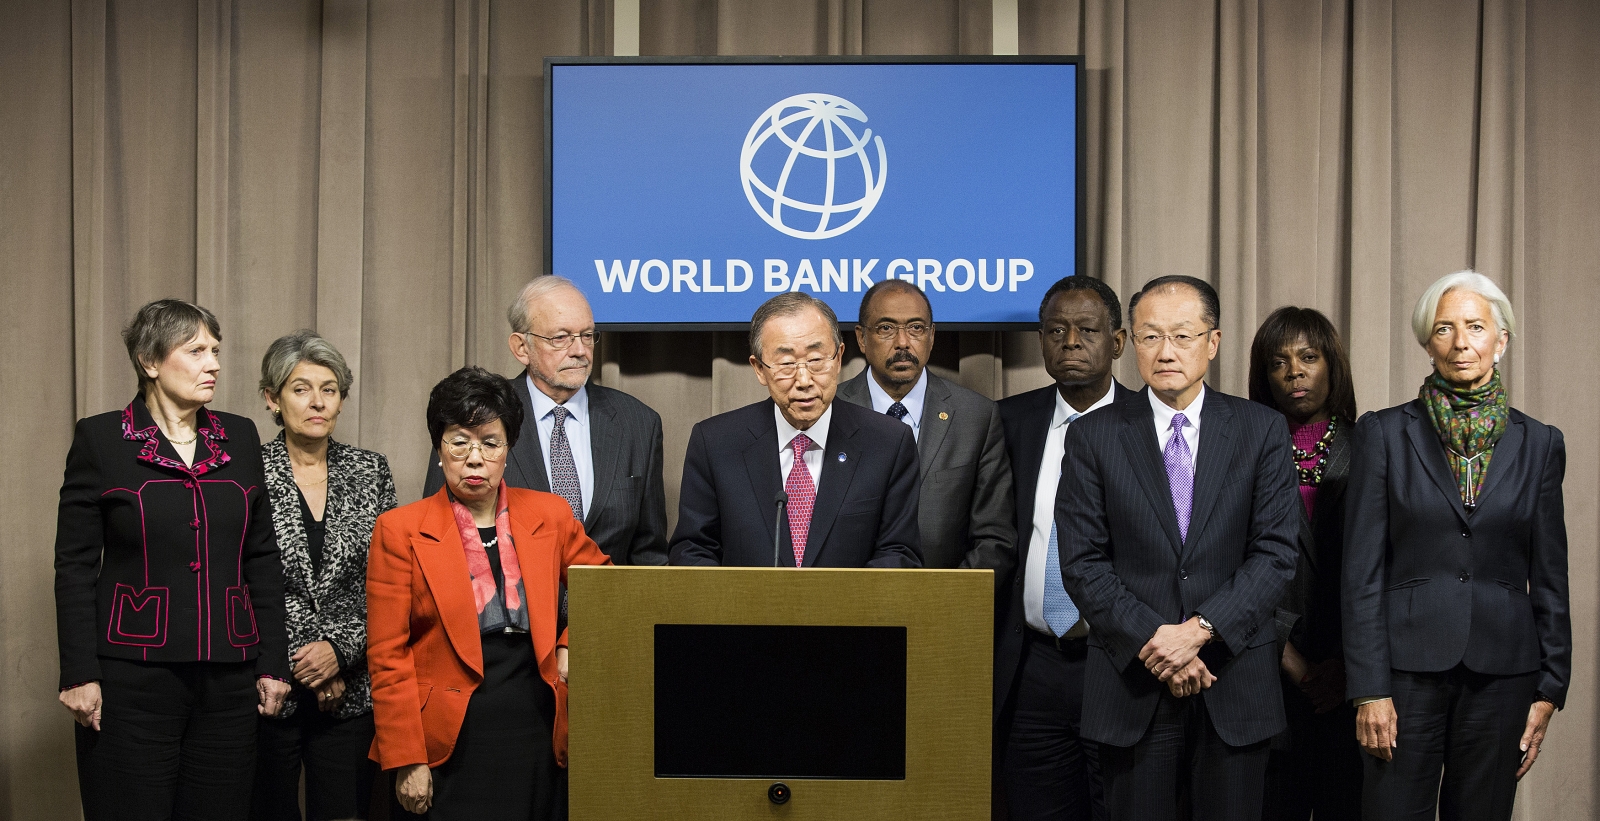 Всемирный банк деятельность. Всемирный банк ООН. Всемирный банк международные организации. Группа Всемирного банка. Всемирный банк картинки.